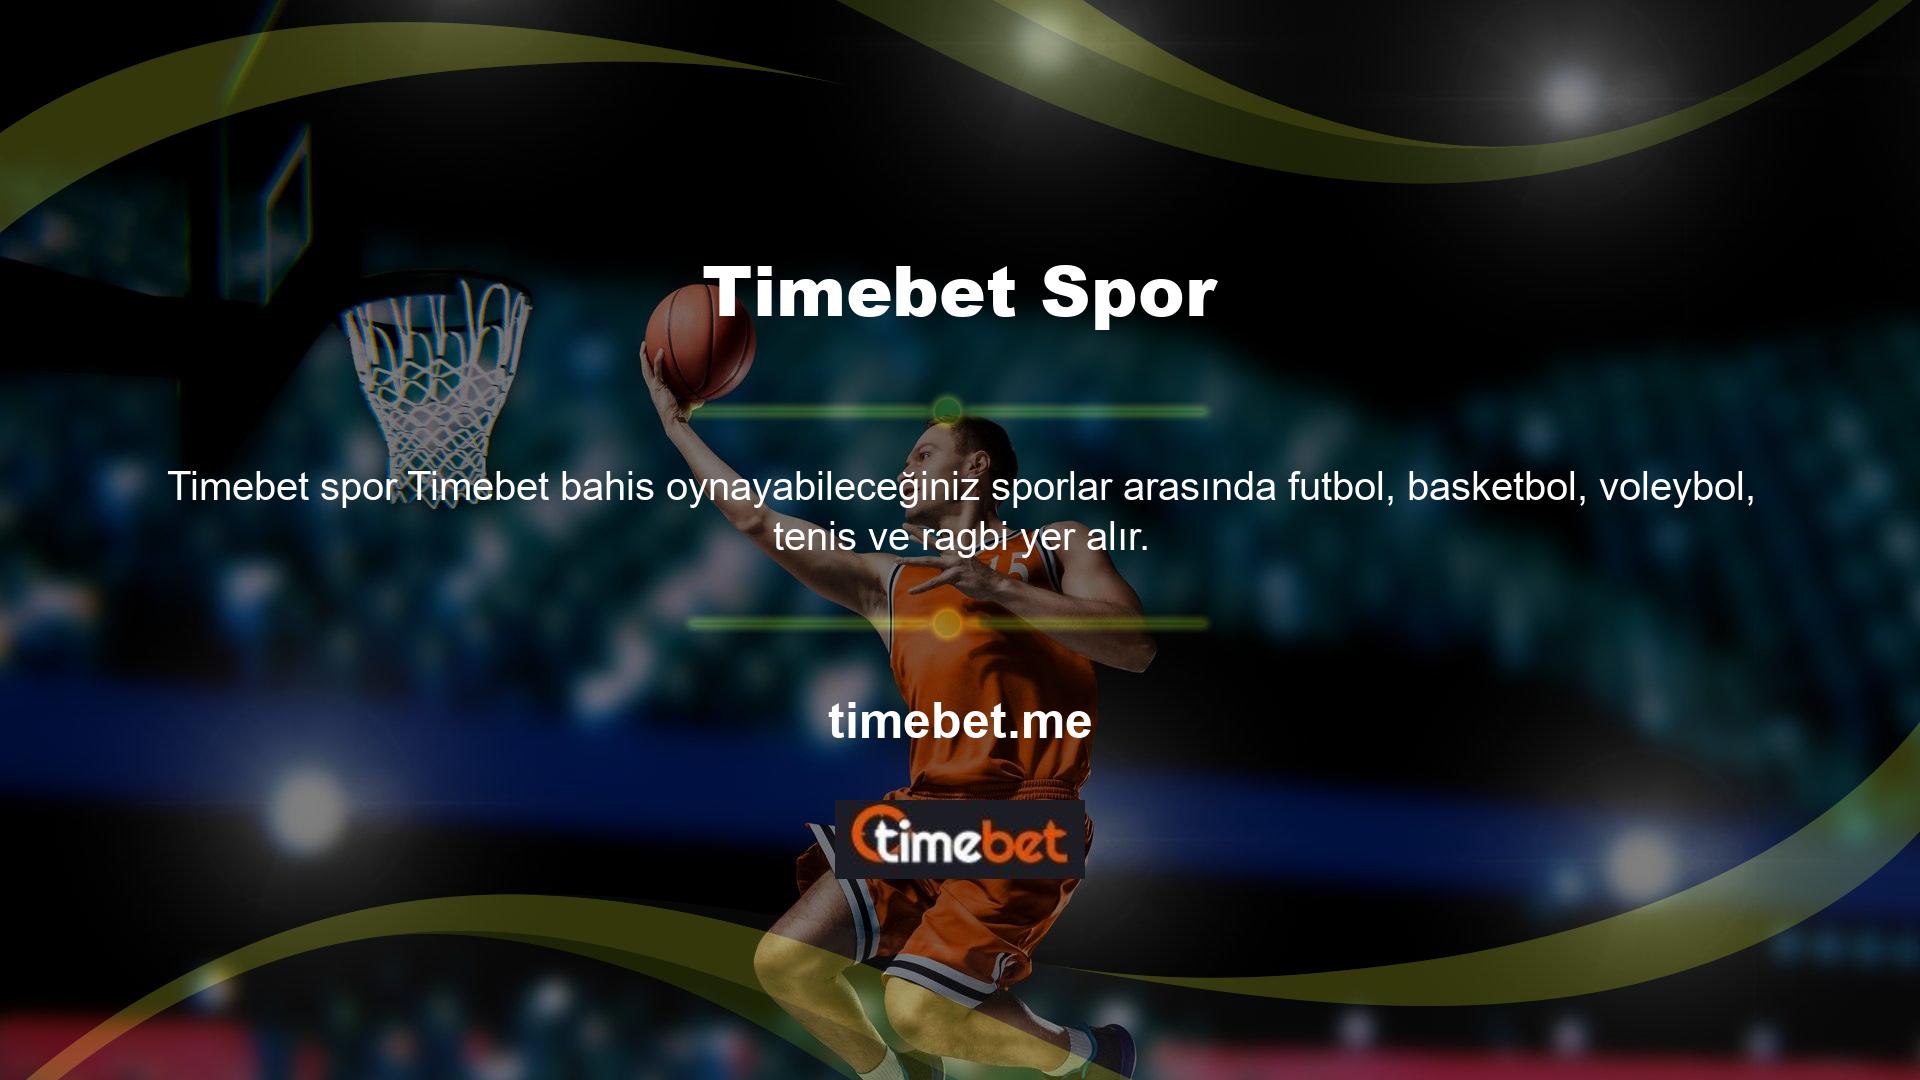 Timebet spor bahis programı yüksek oranları ile bilinir ve bahisçiler arasında oldukça popülerdir